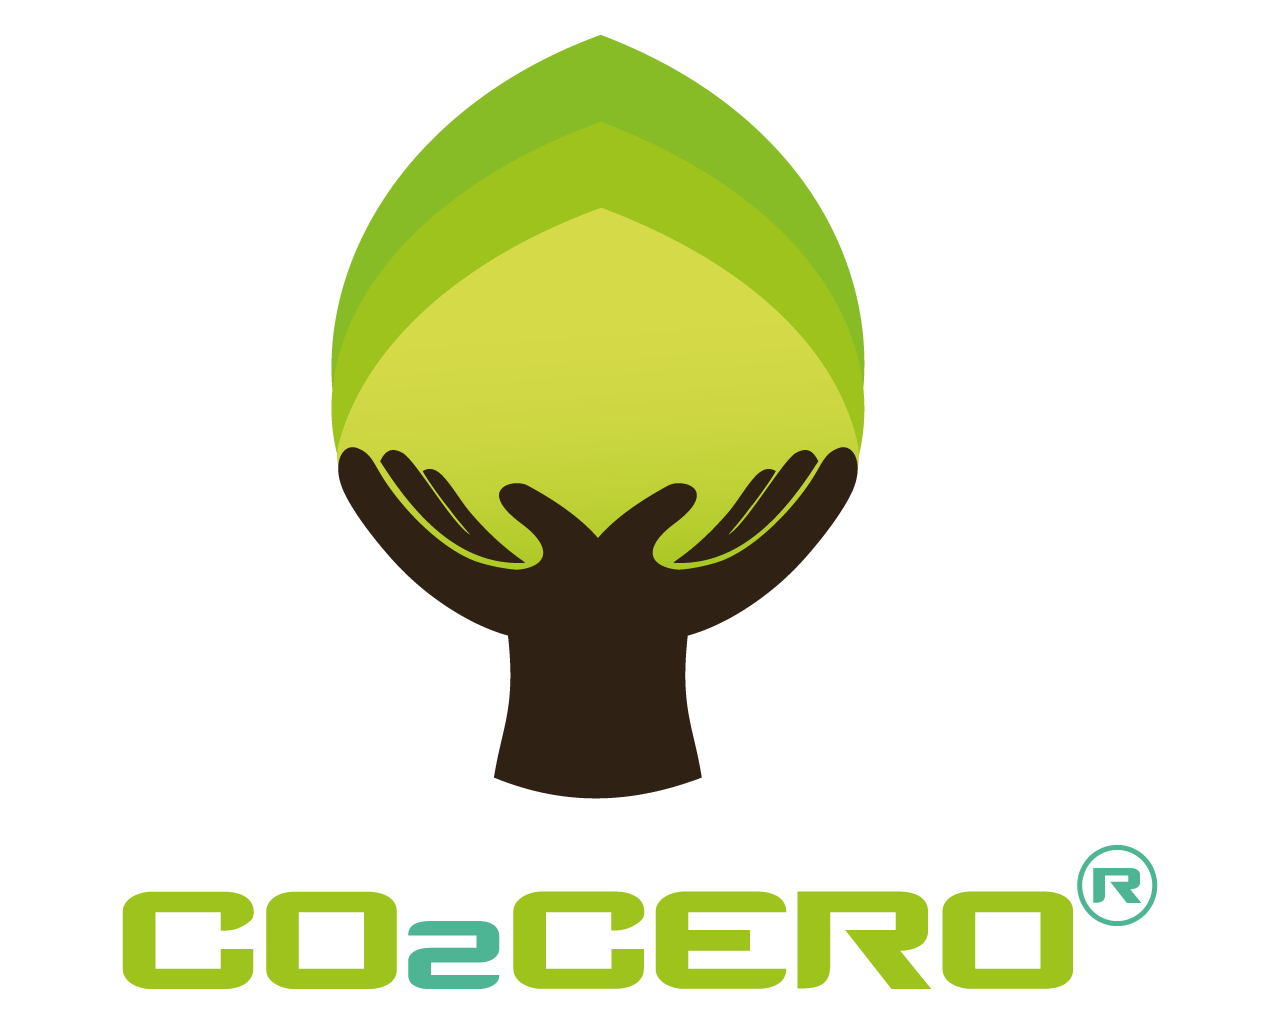 CO2 Cero logo